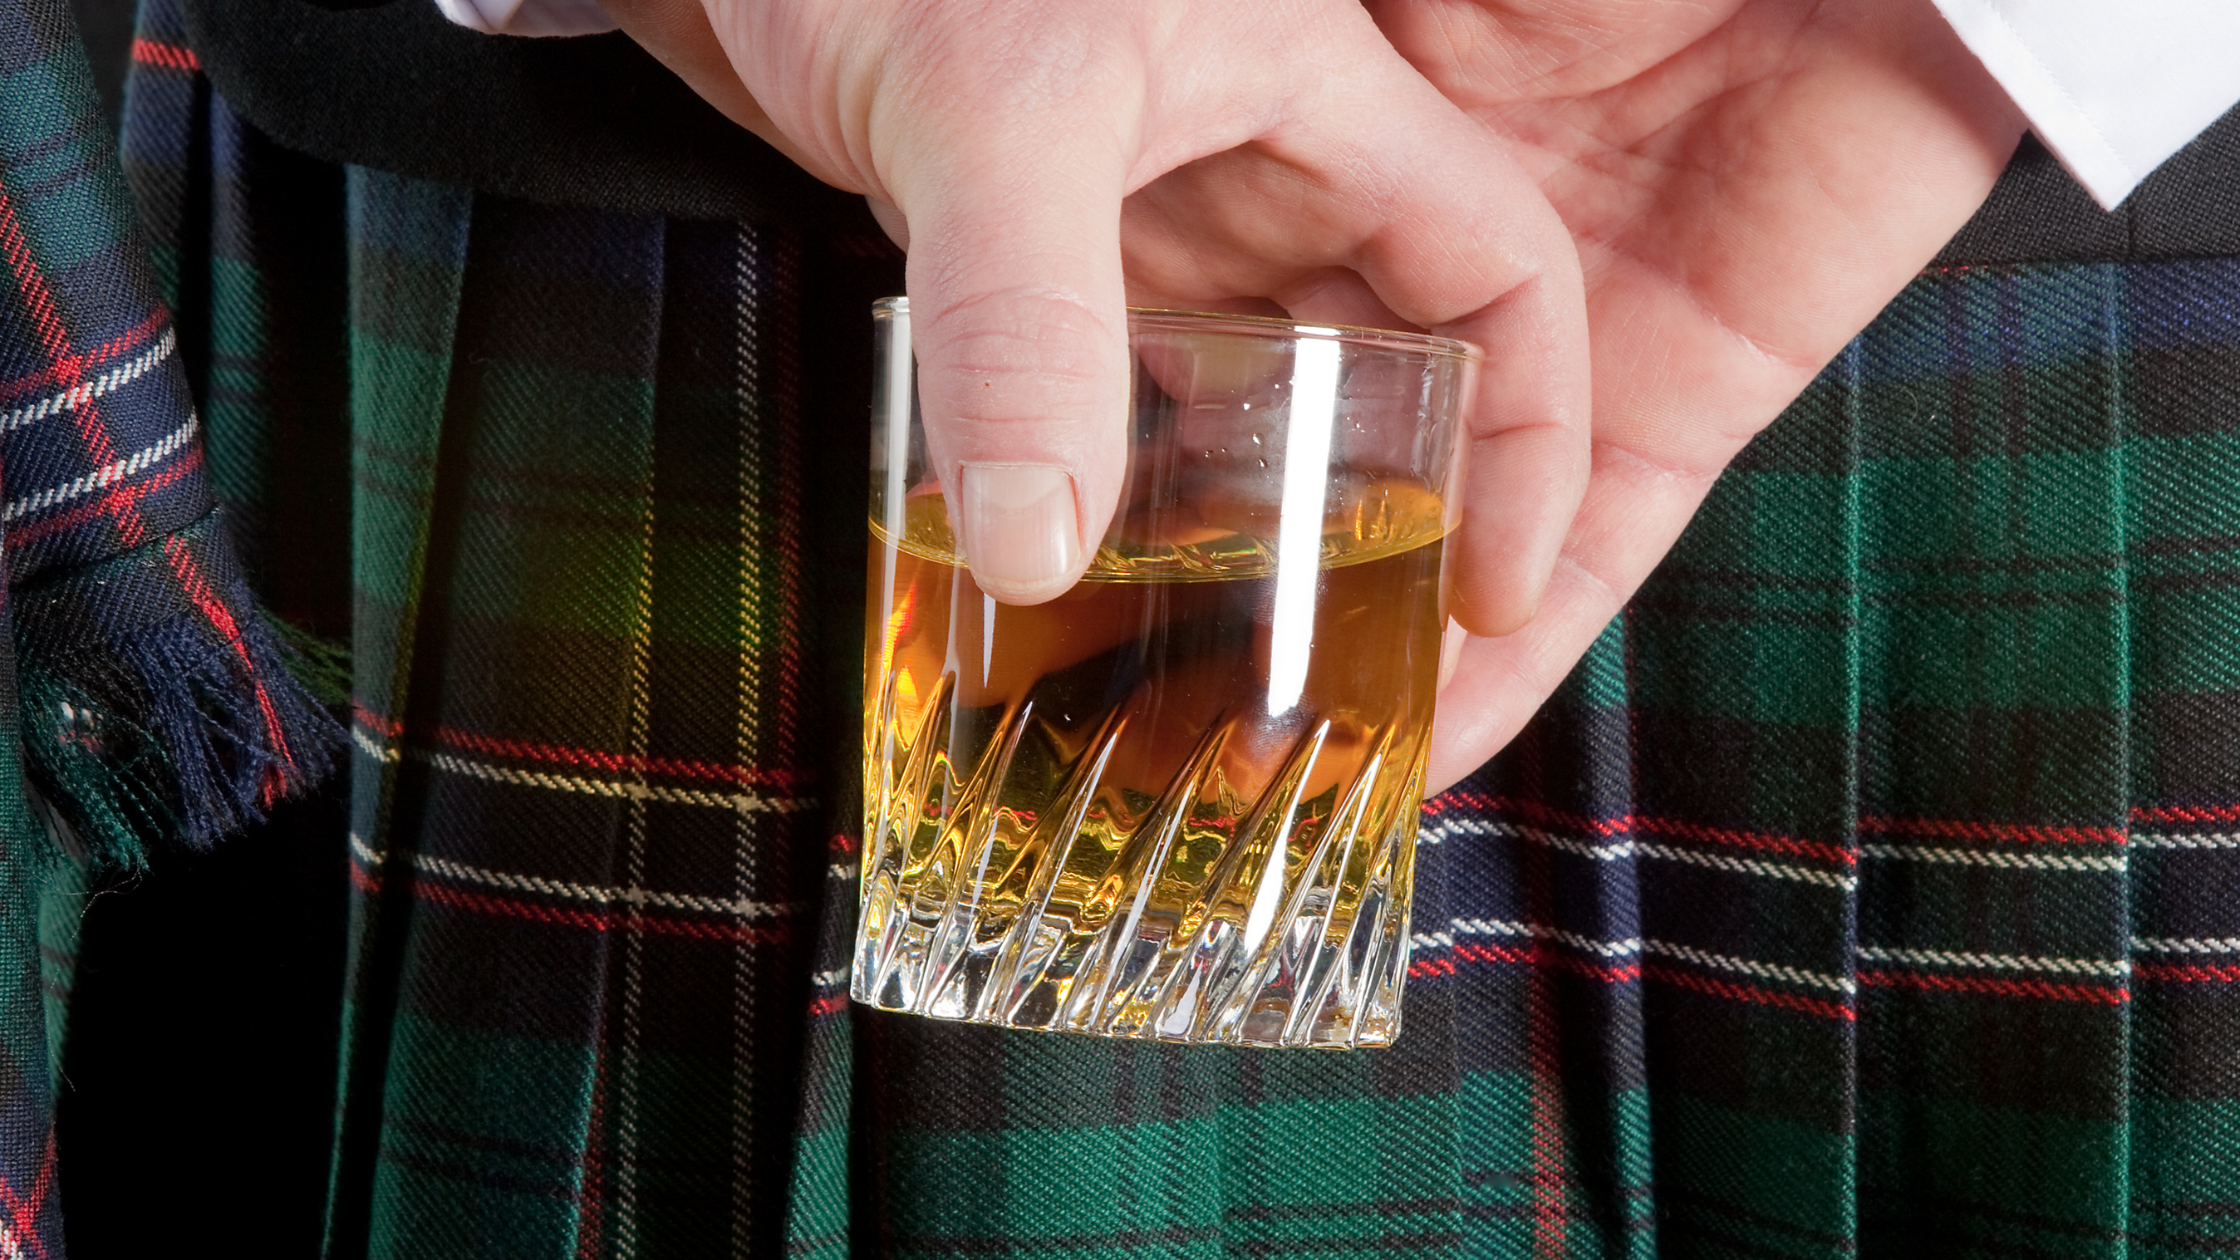 Come bere dello Scotch Whisky nel modo giusto